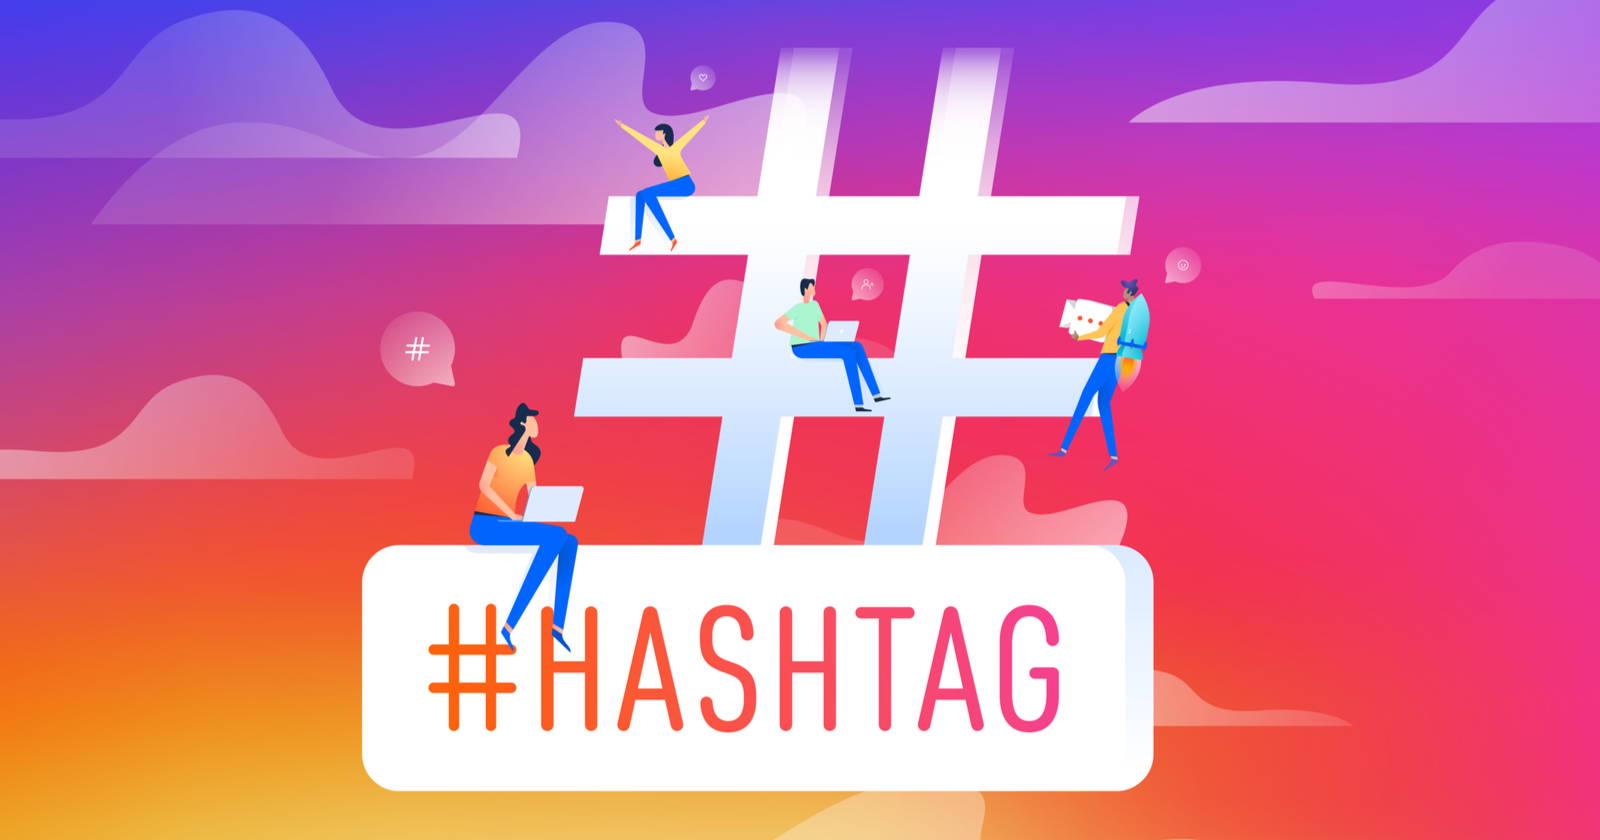 Hashtags on social media